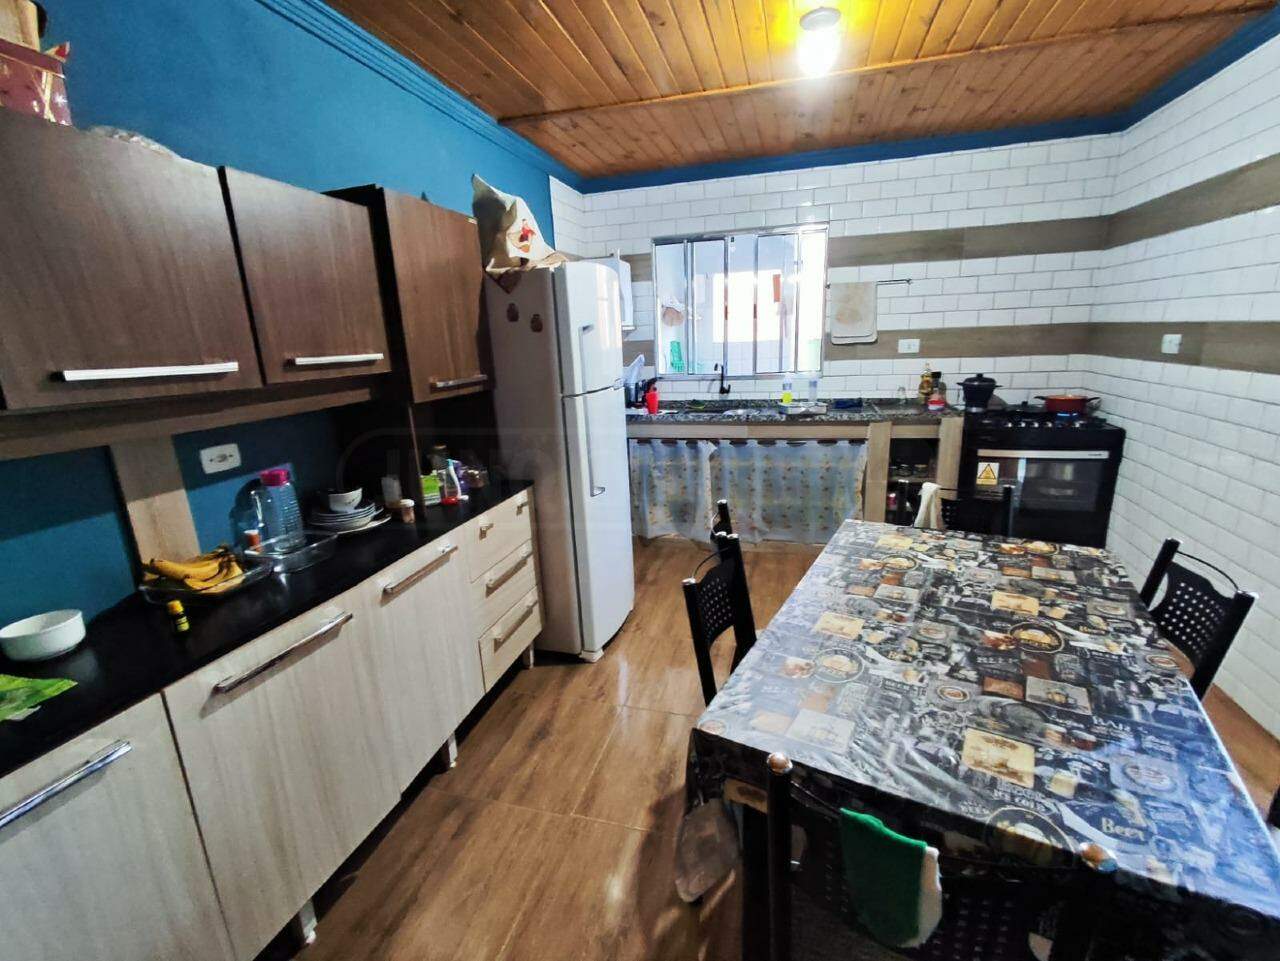 Casa à venda, 4 quartos, sendo 1 suíte, 2 vagas, no bairro Residencial São Pedro em Rio das Pedras - SP